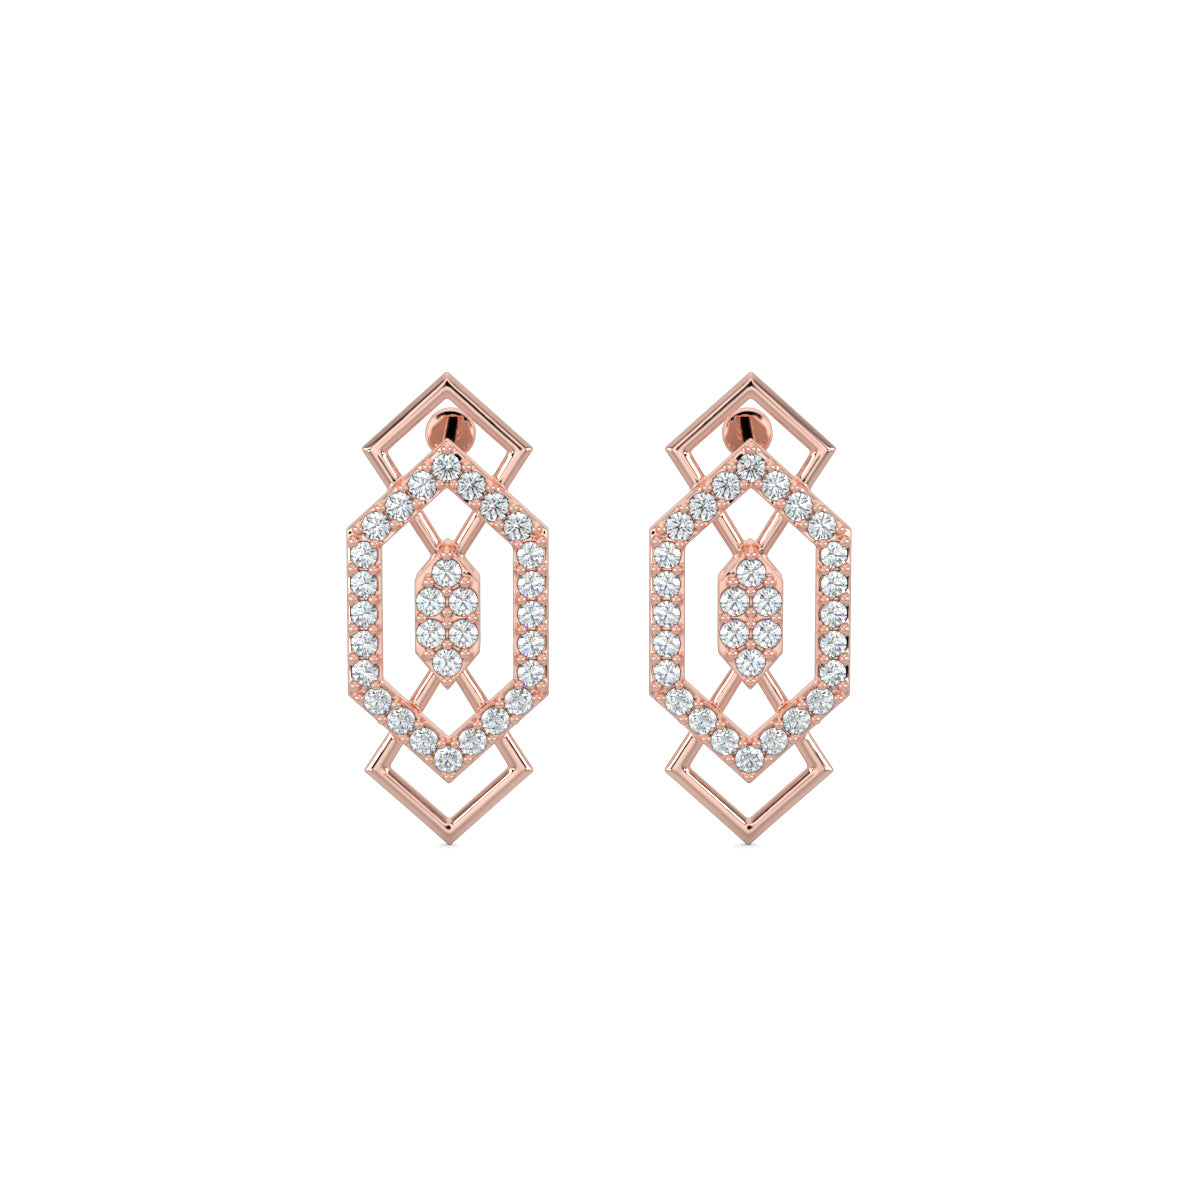 Rose Gold, Diamond earrings, mid-length earrings, elegant drop earrings, sparkling diamond jewelry